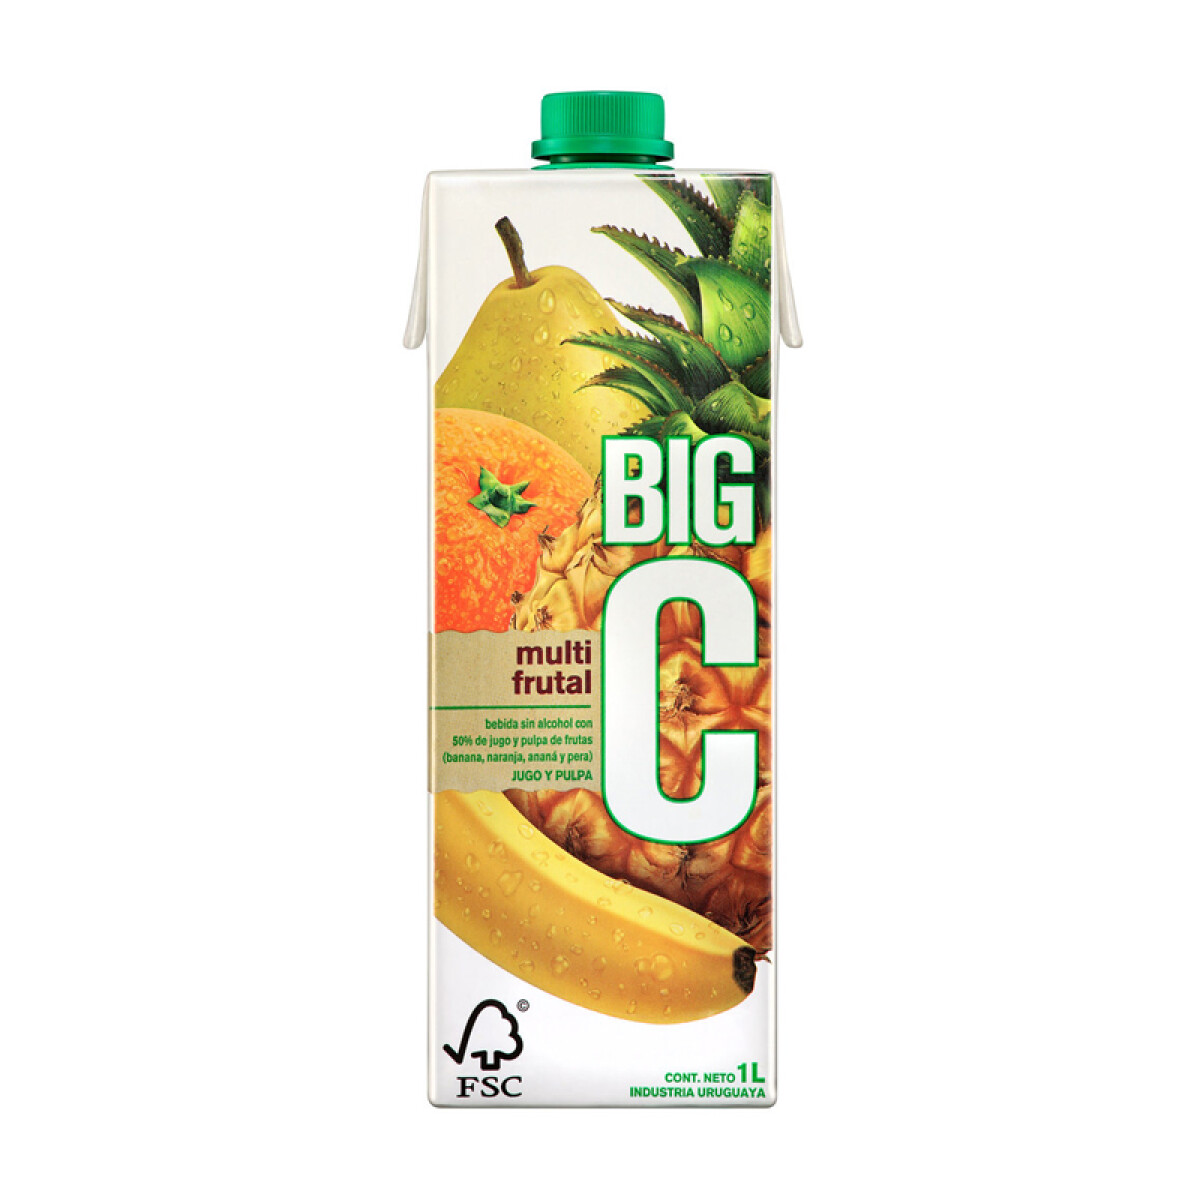 Jugo Big C 1 Litro Manzana – Multifruta - Big C Multifruta 1 Litro 